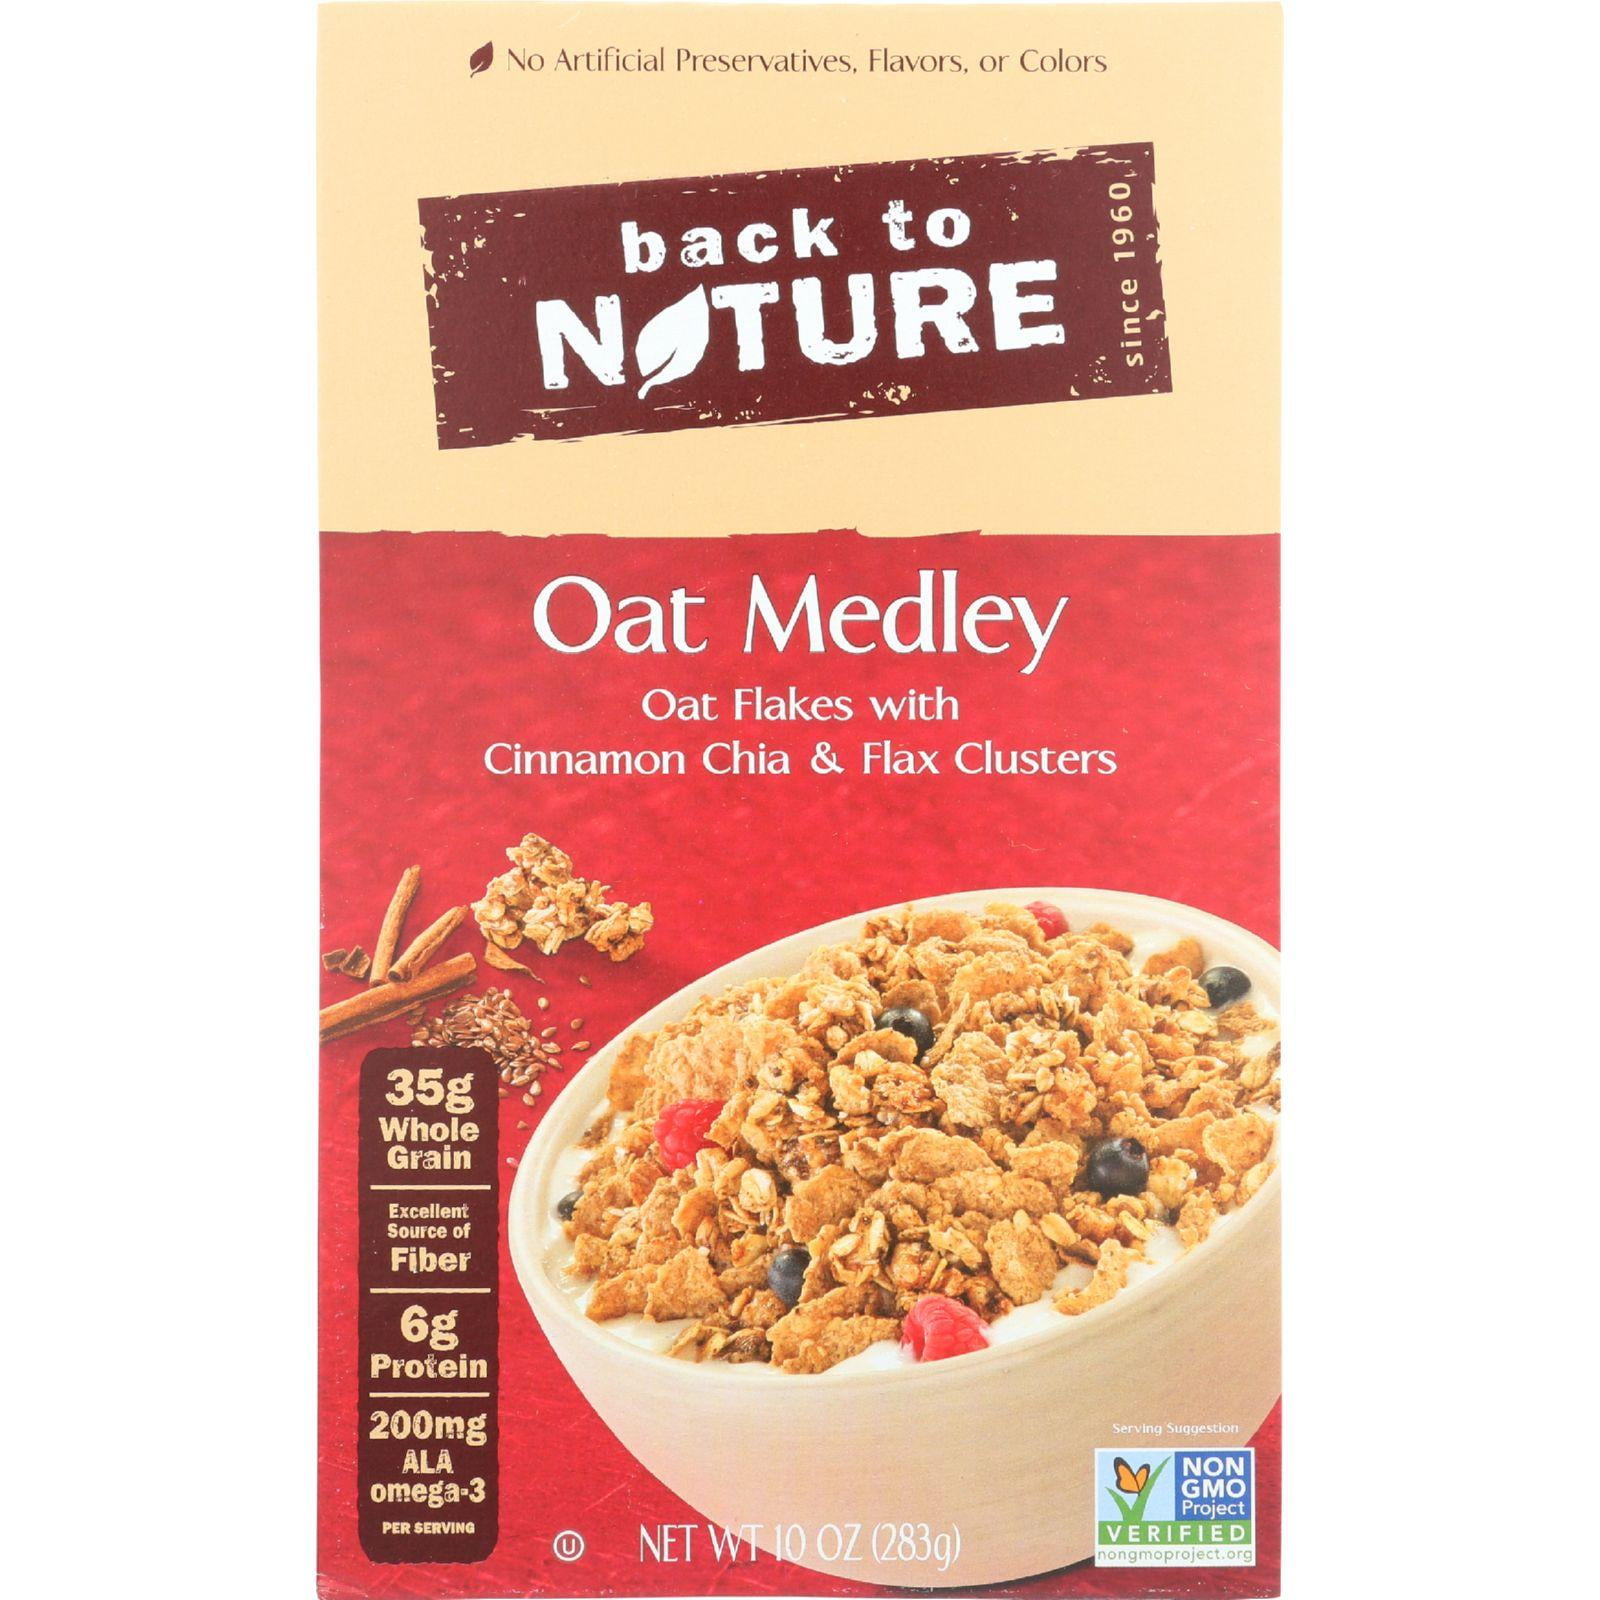 Back to Nature Oat Medley Cereal, 10 oz - Walmart.com